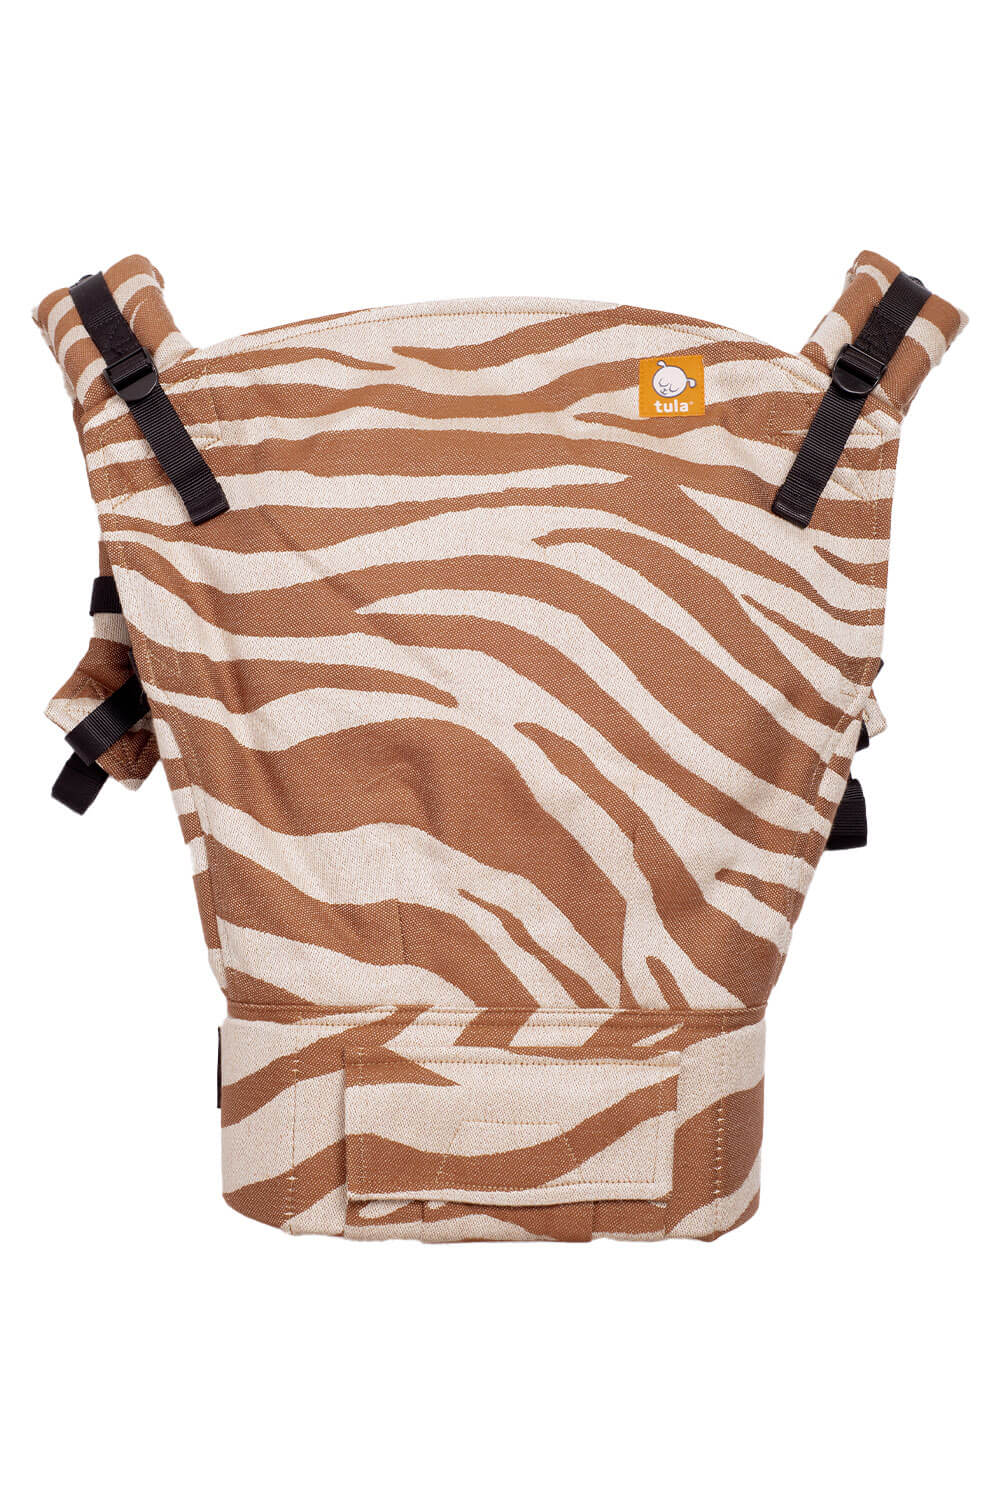 Safari Caramel - Signature Woven Toddler Carrier